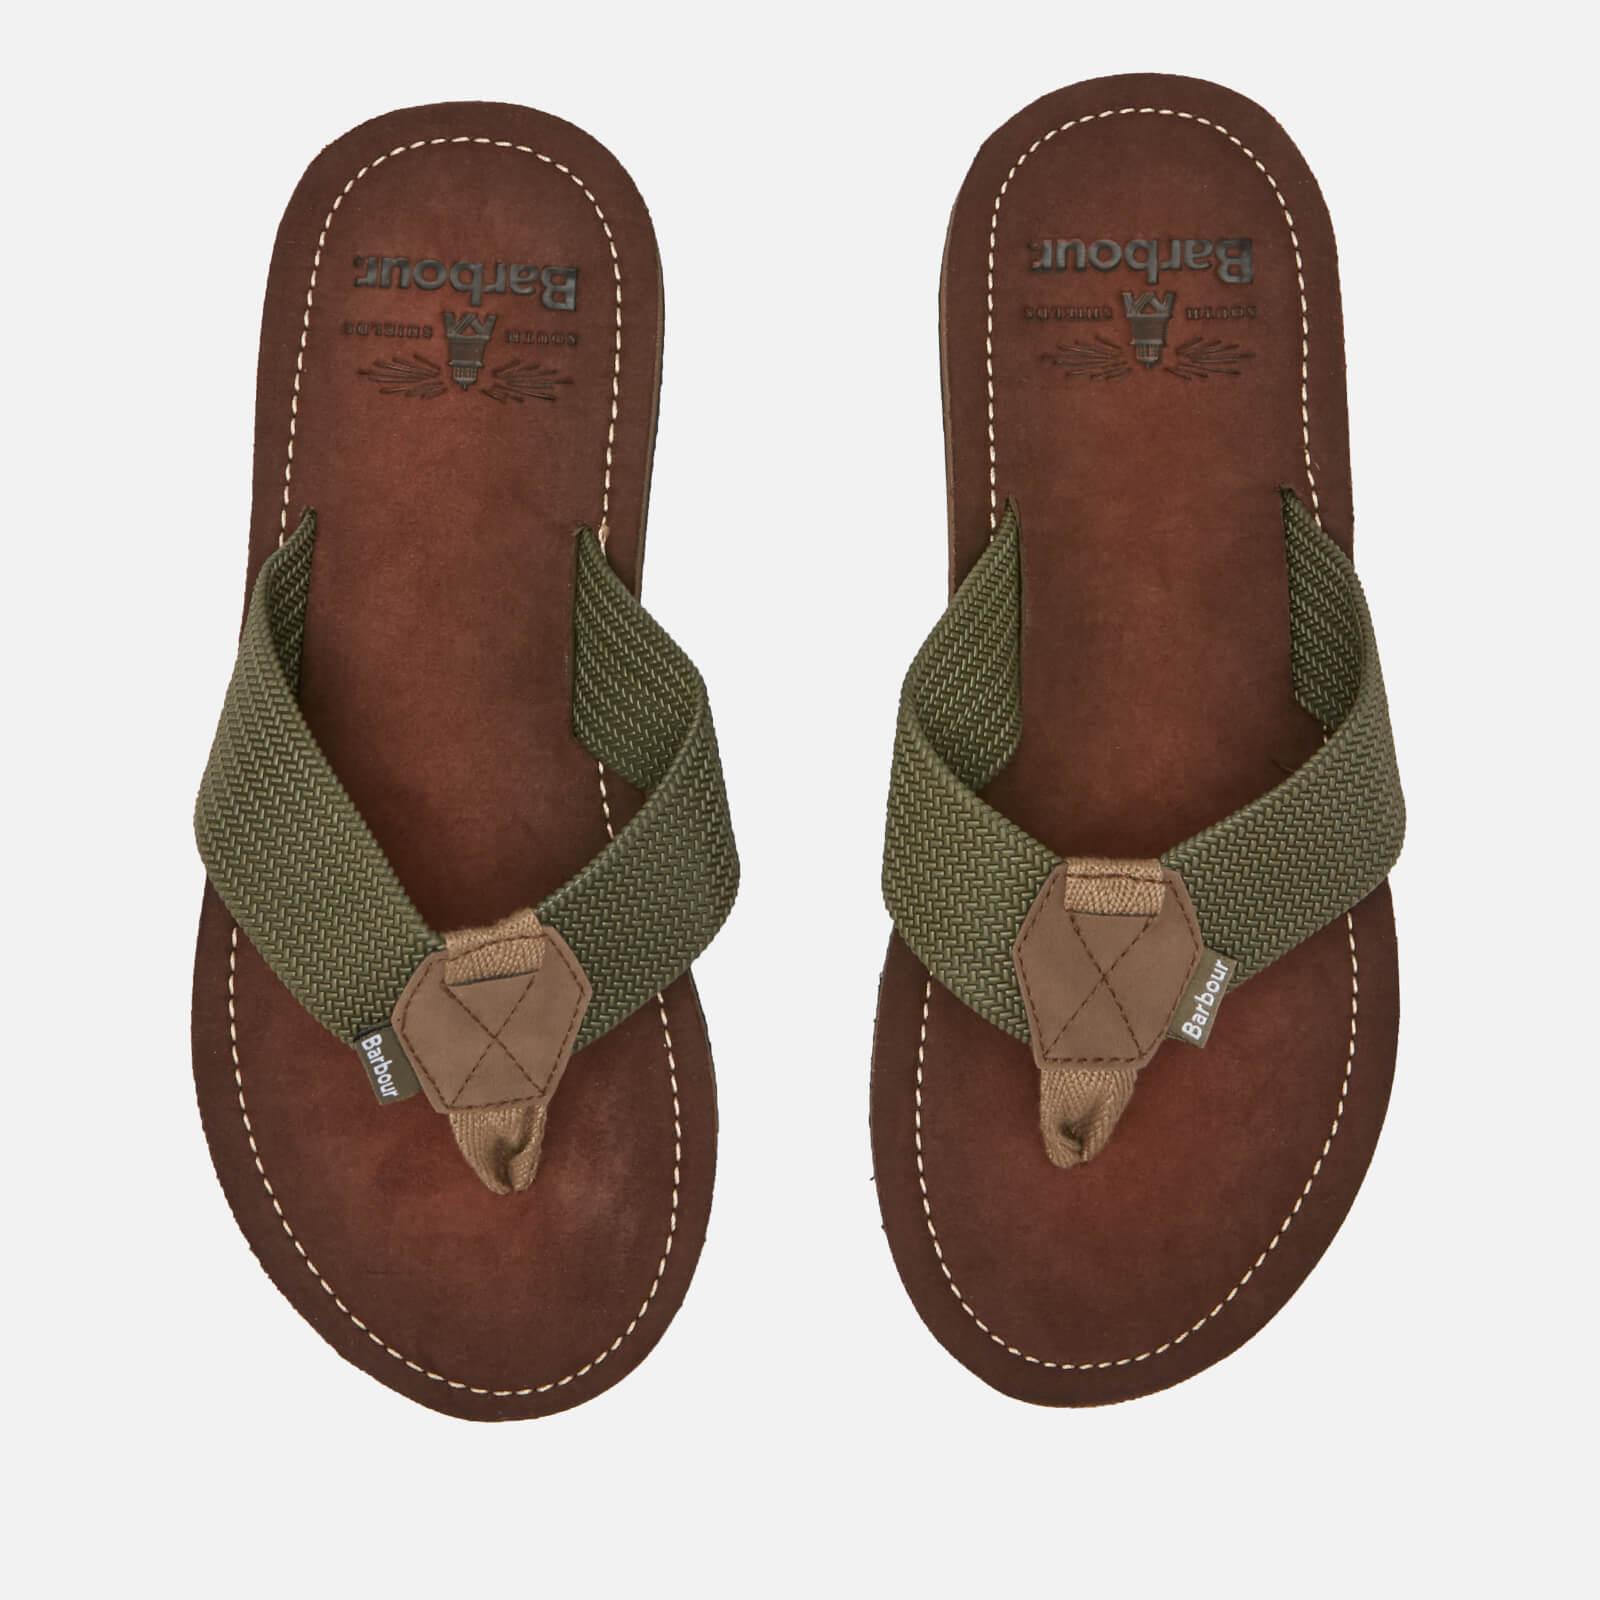 barbour sandals